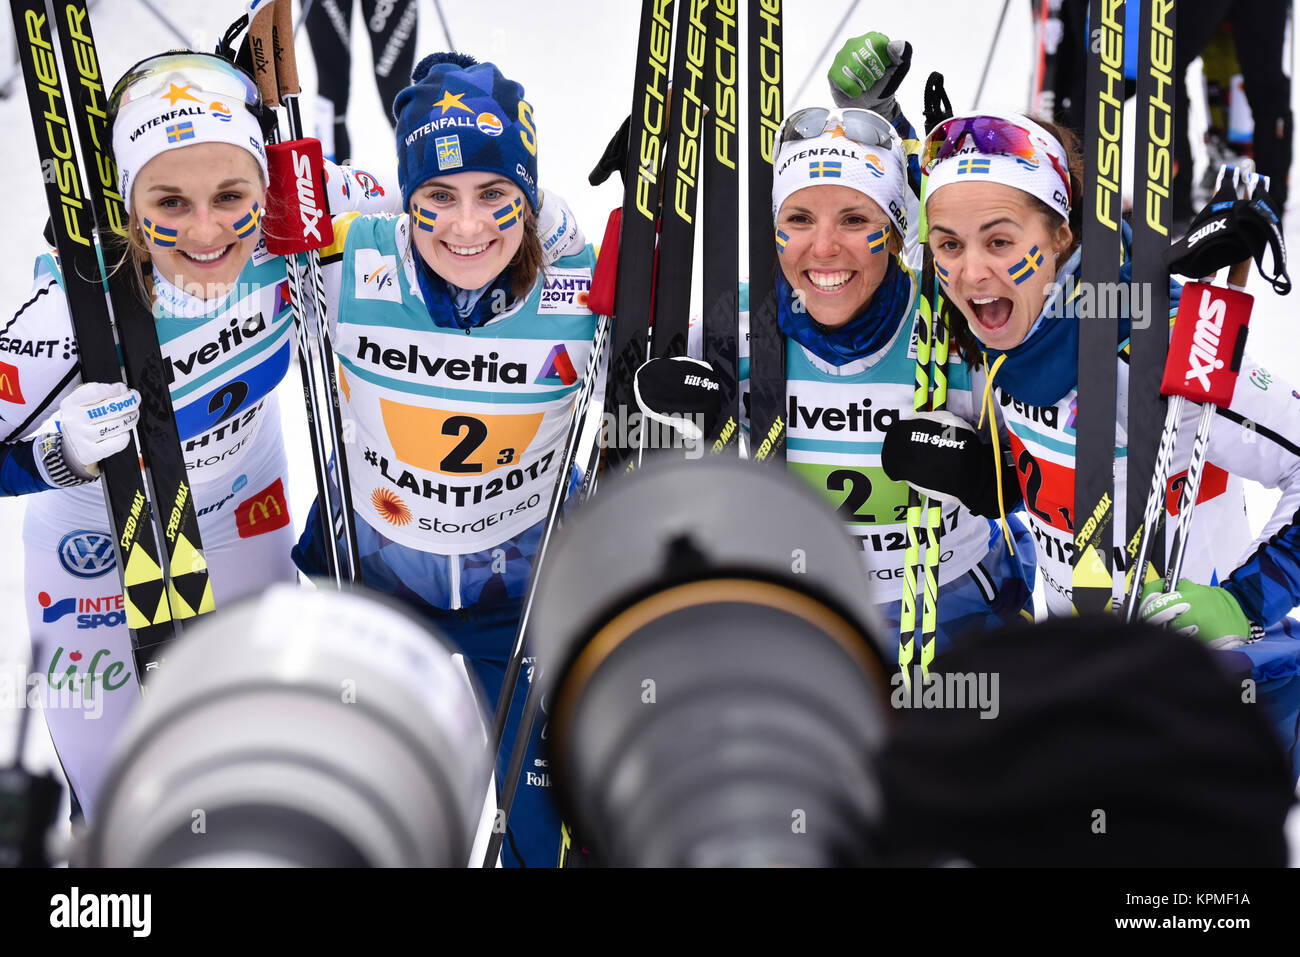 L'équipe du relais de la Suède célèbre après avoir terminé deuxième dans les 4 x 5 k au relais 2017 Championnats du Monde de Ski Nordique, Lahti, Finlande. Banque D'Images